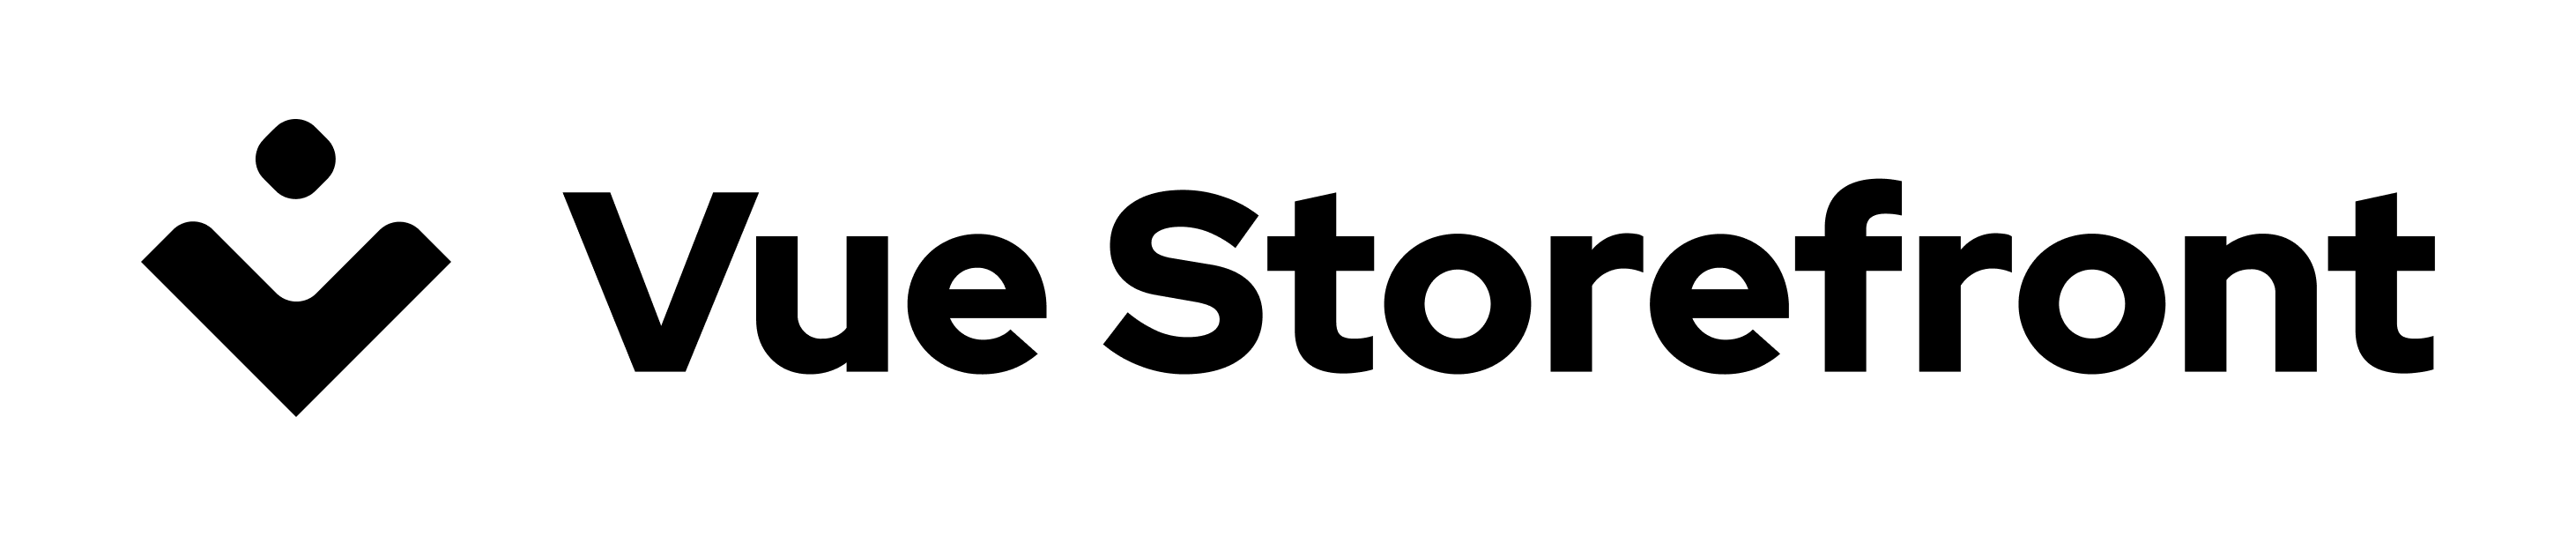 “vue storefront logo image